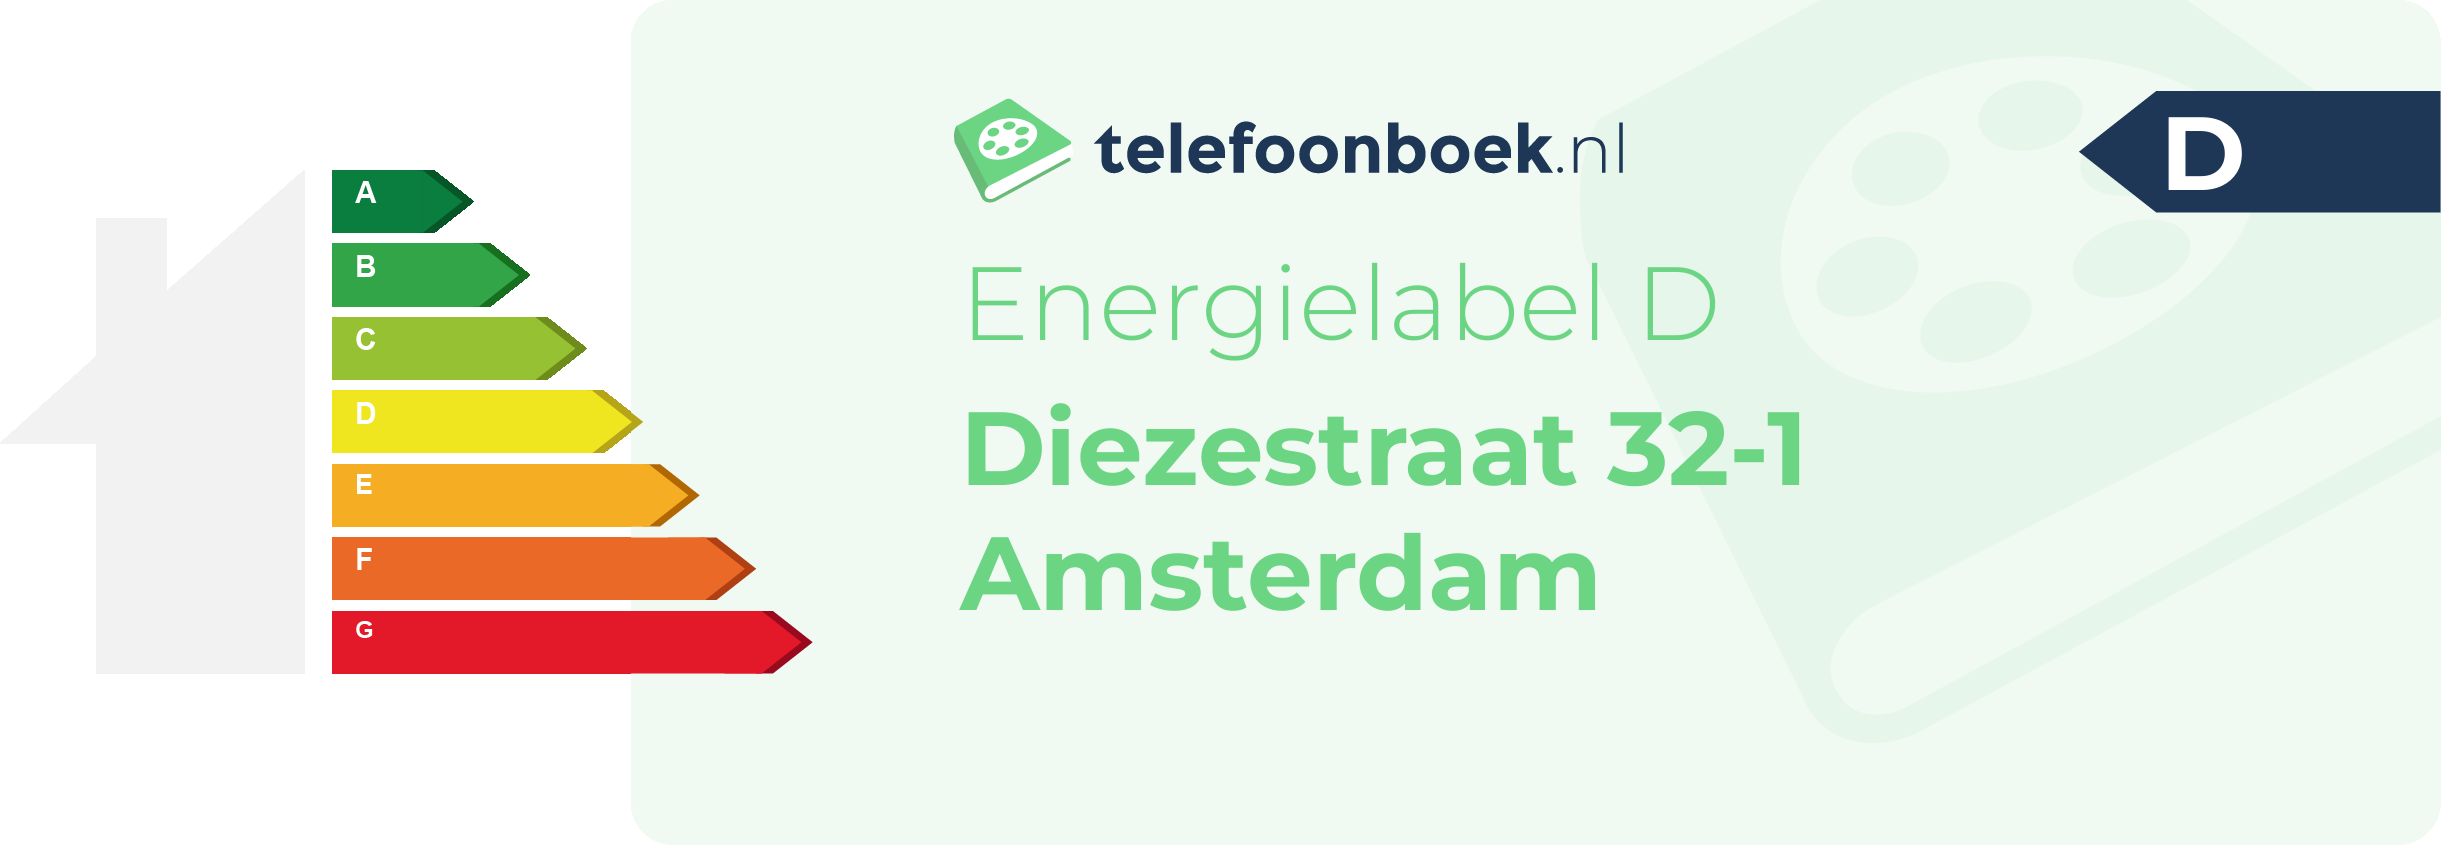 Energielabel Diezestraat 32-1 Amsterdam